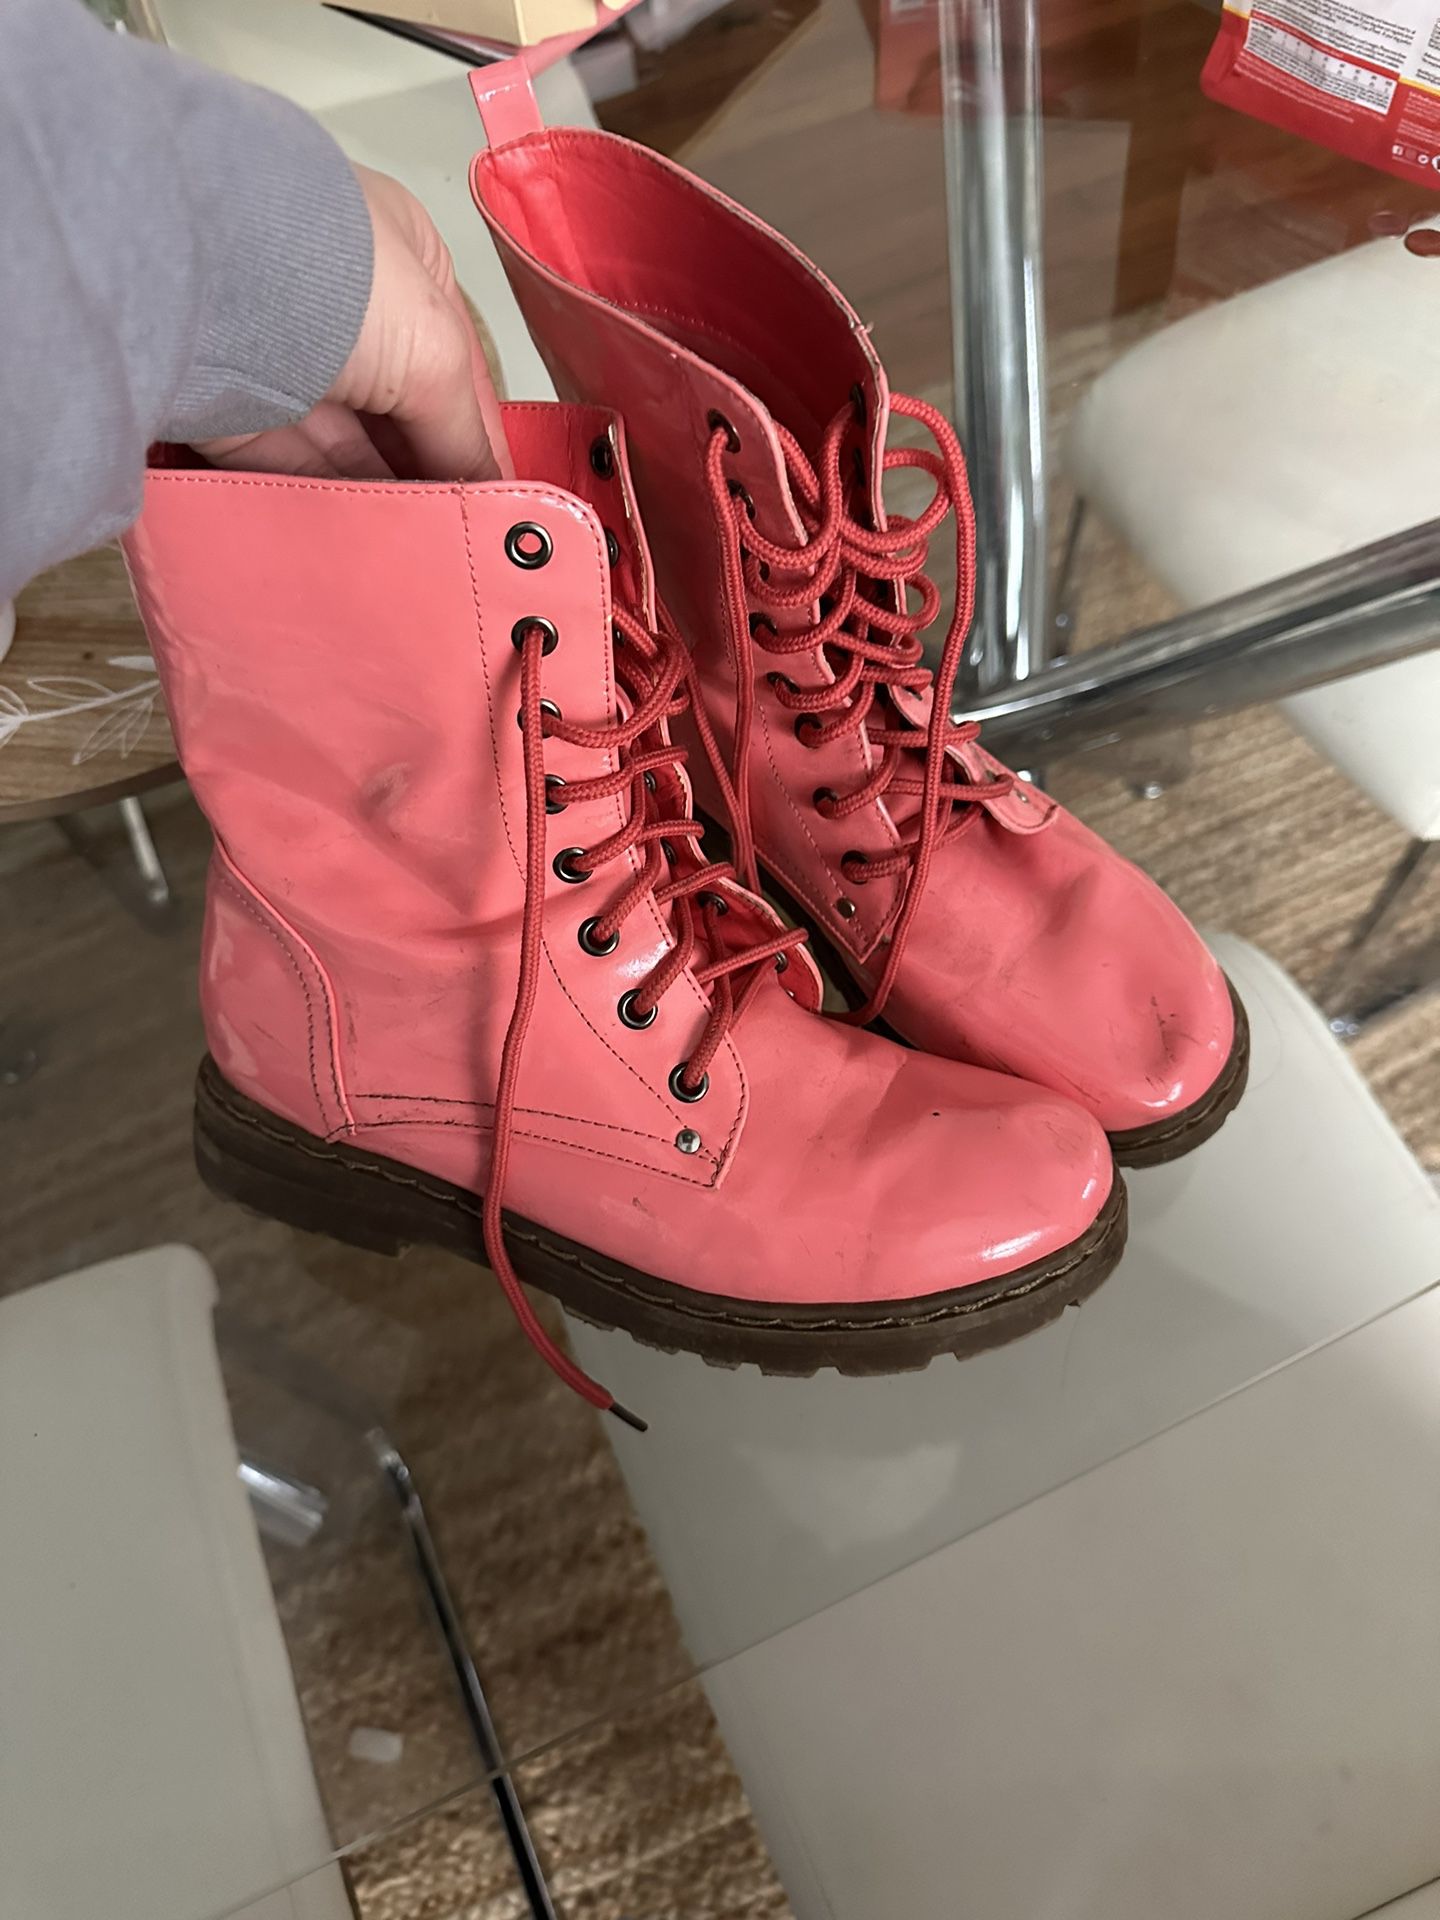 Girls rain Boots